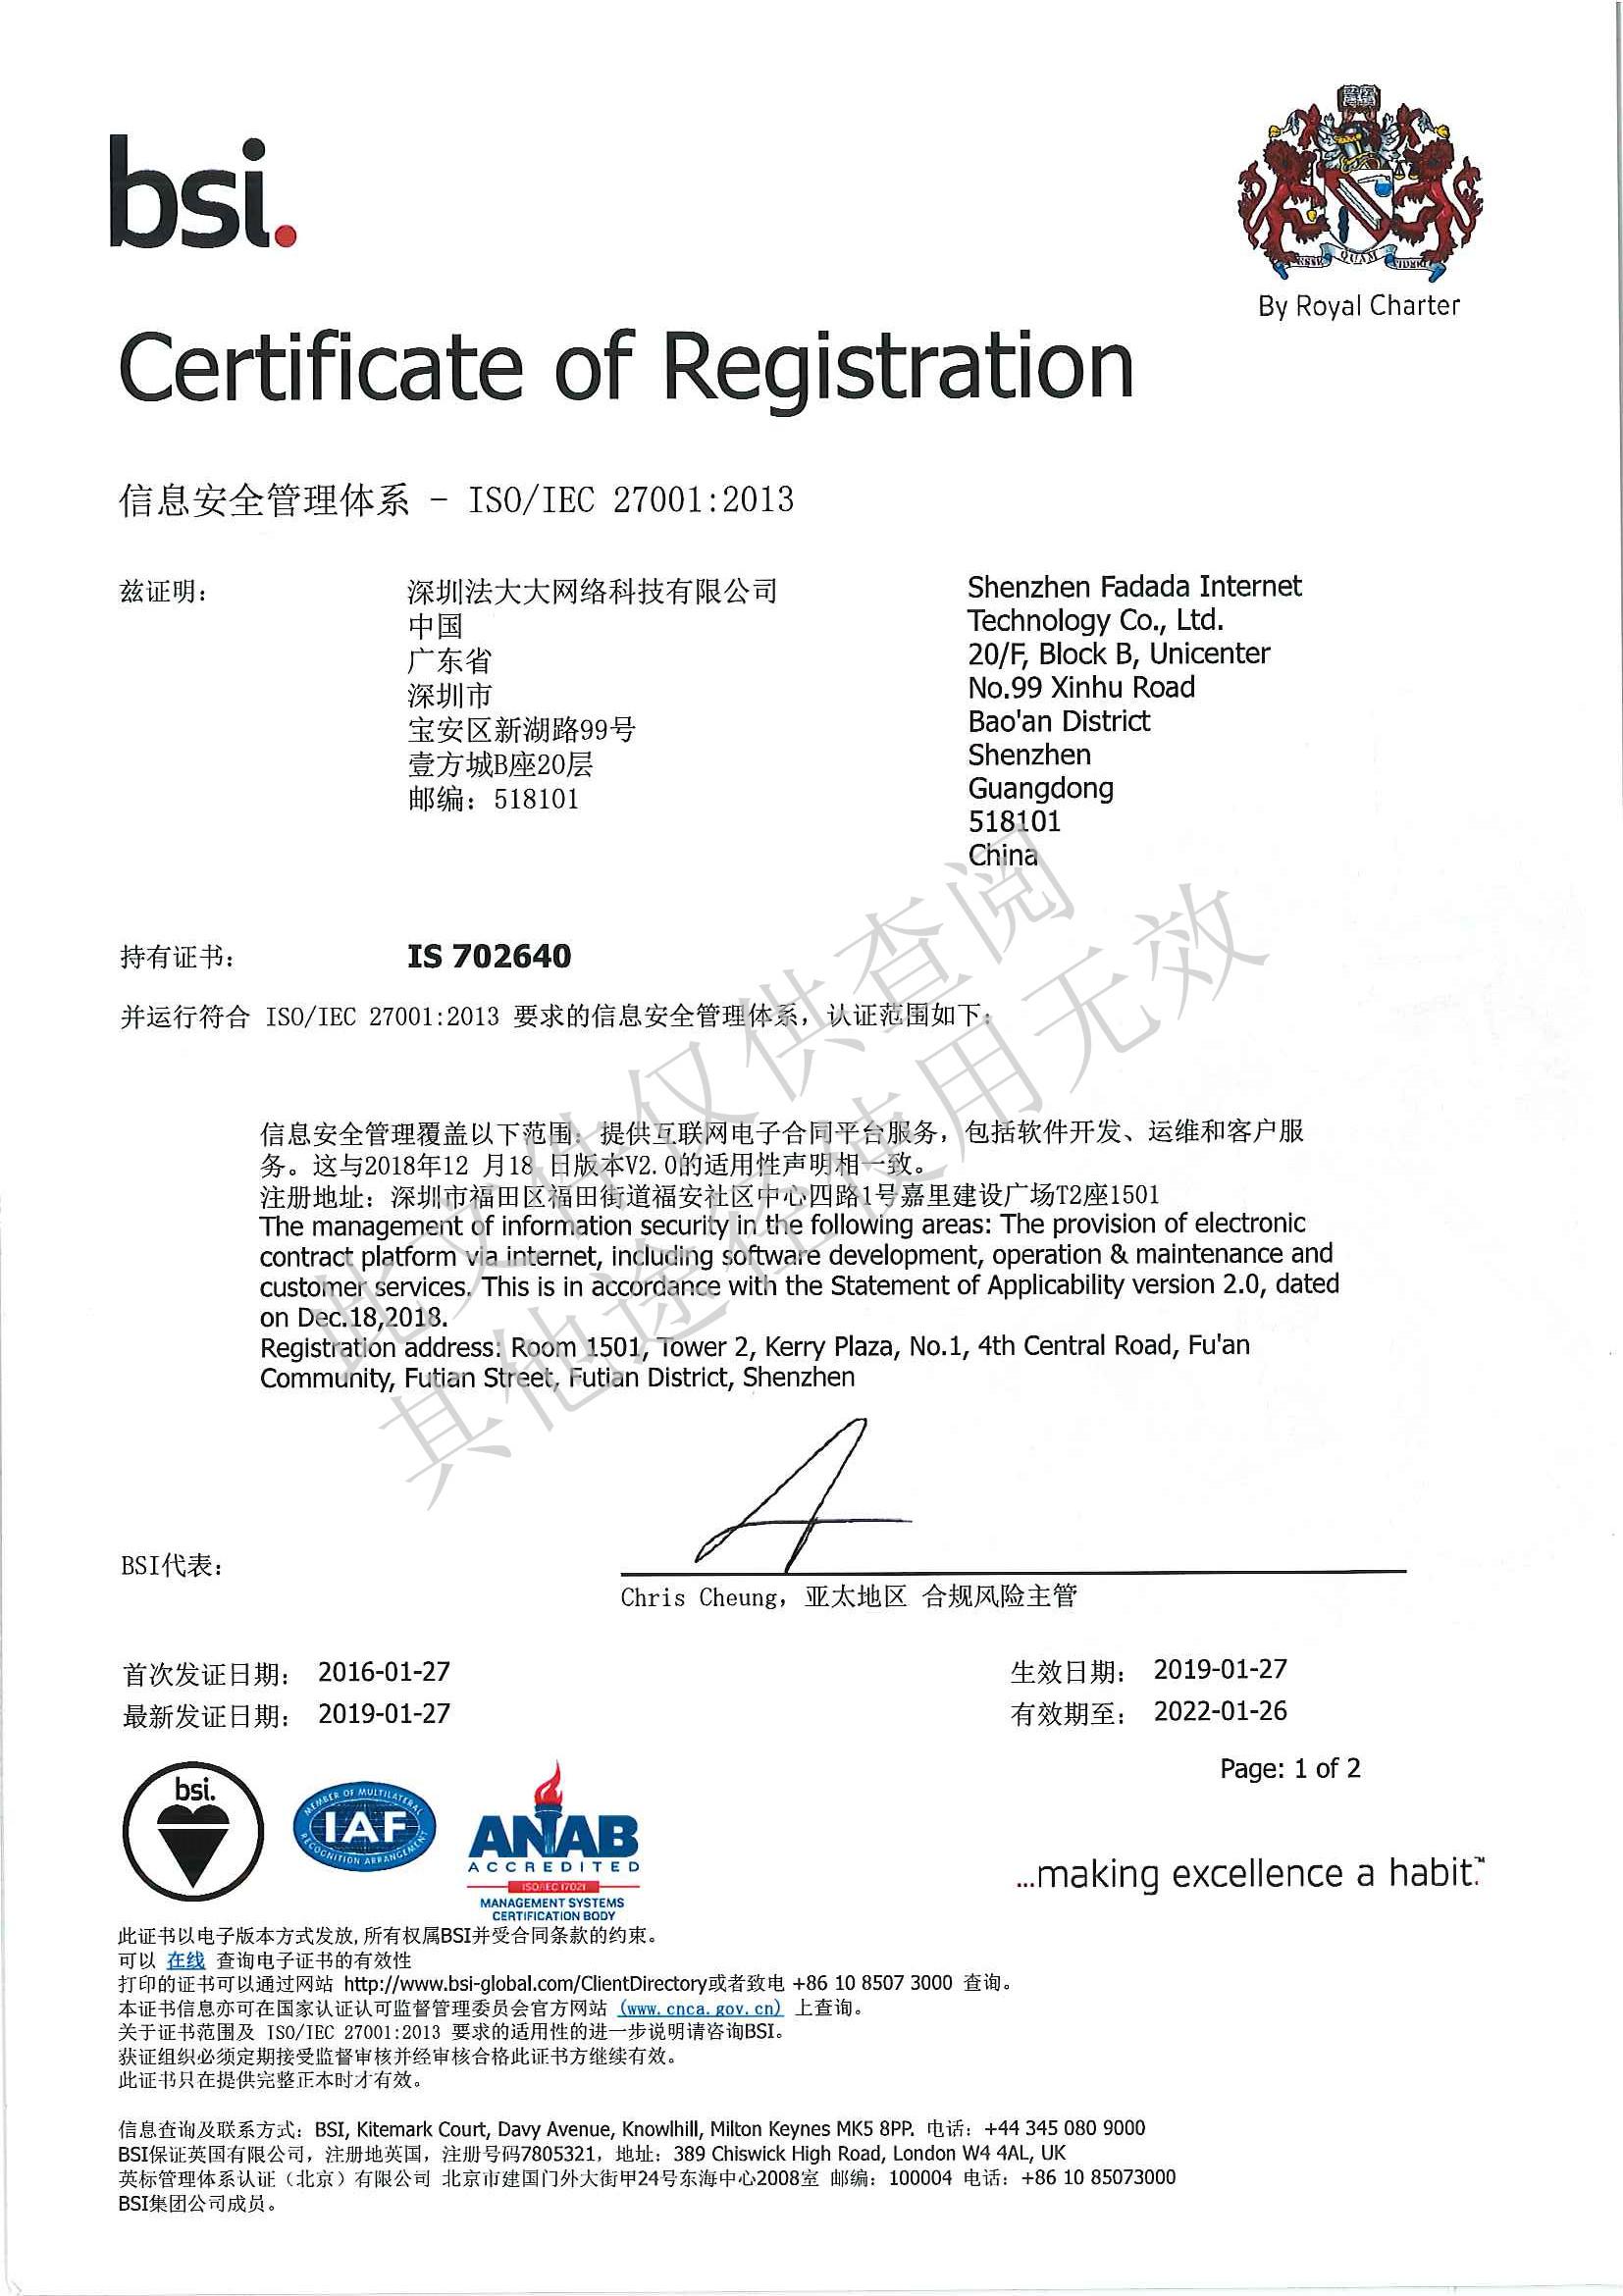 法大大ISO27001认证